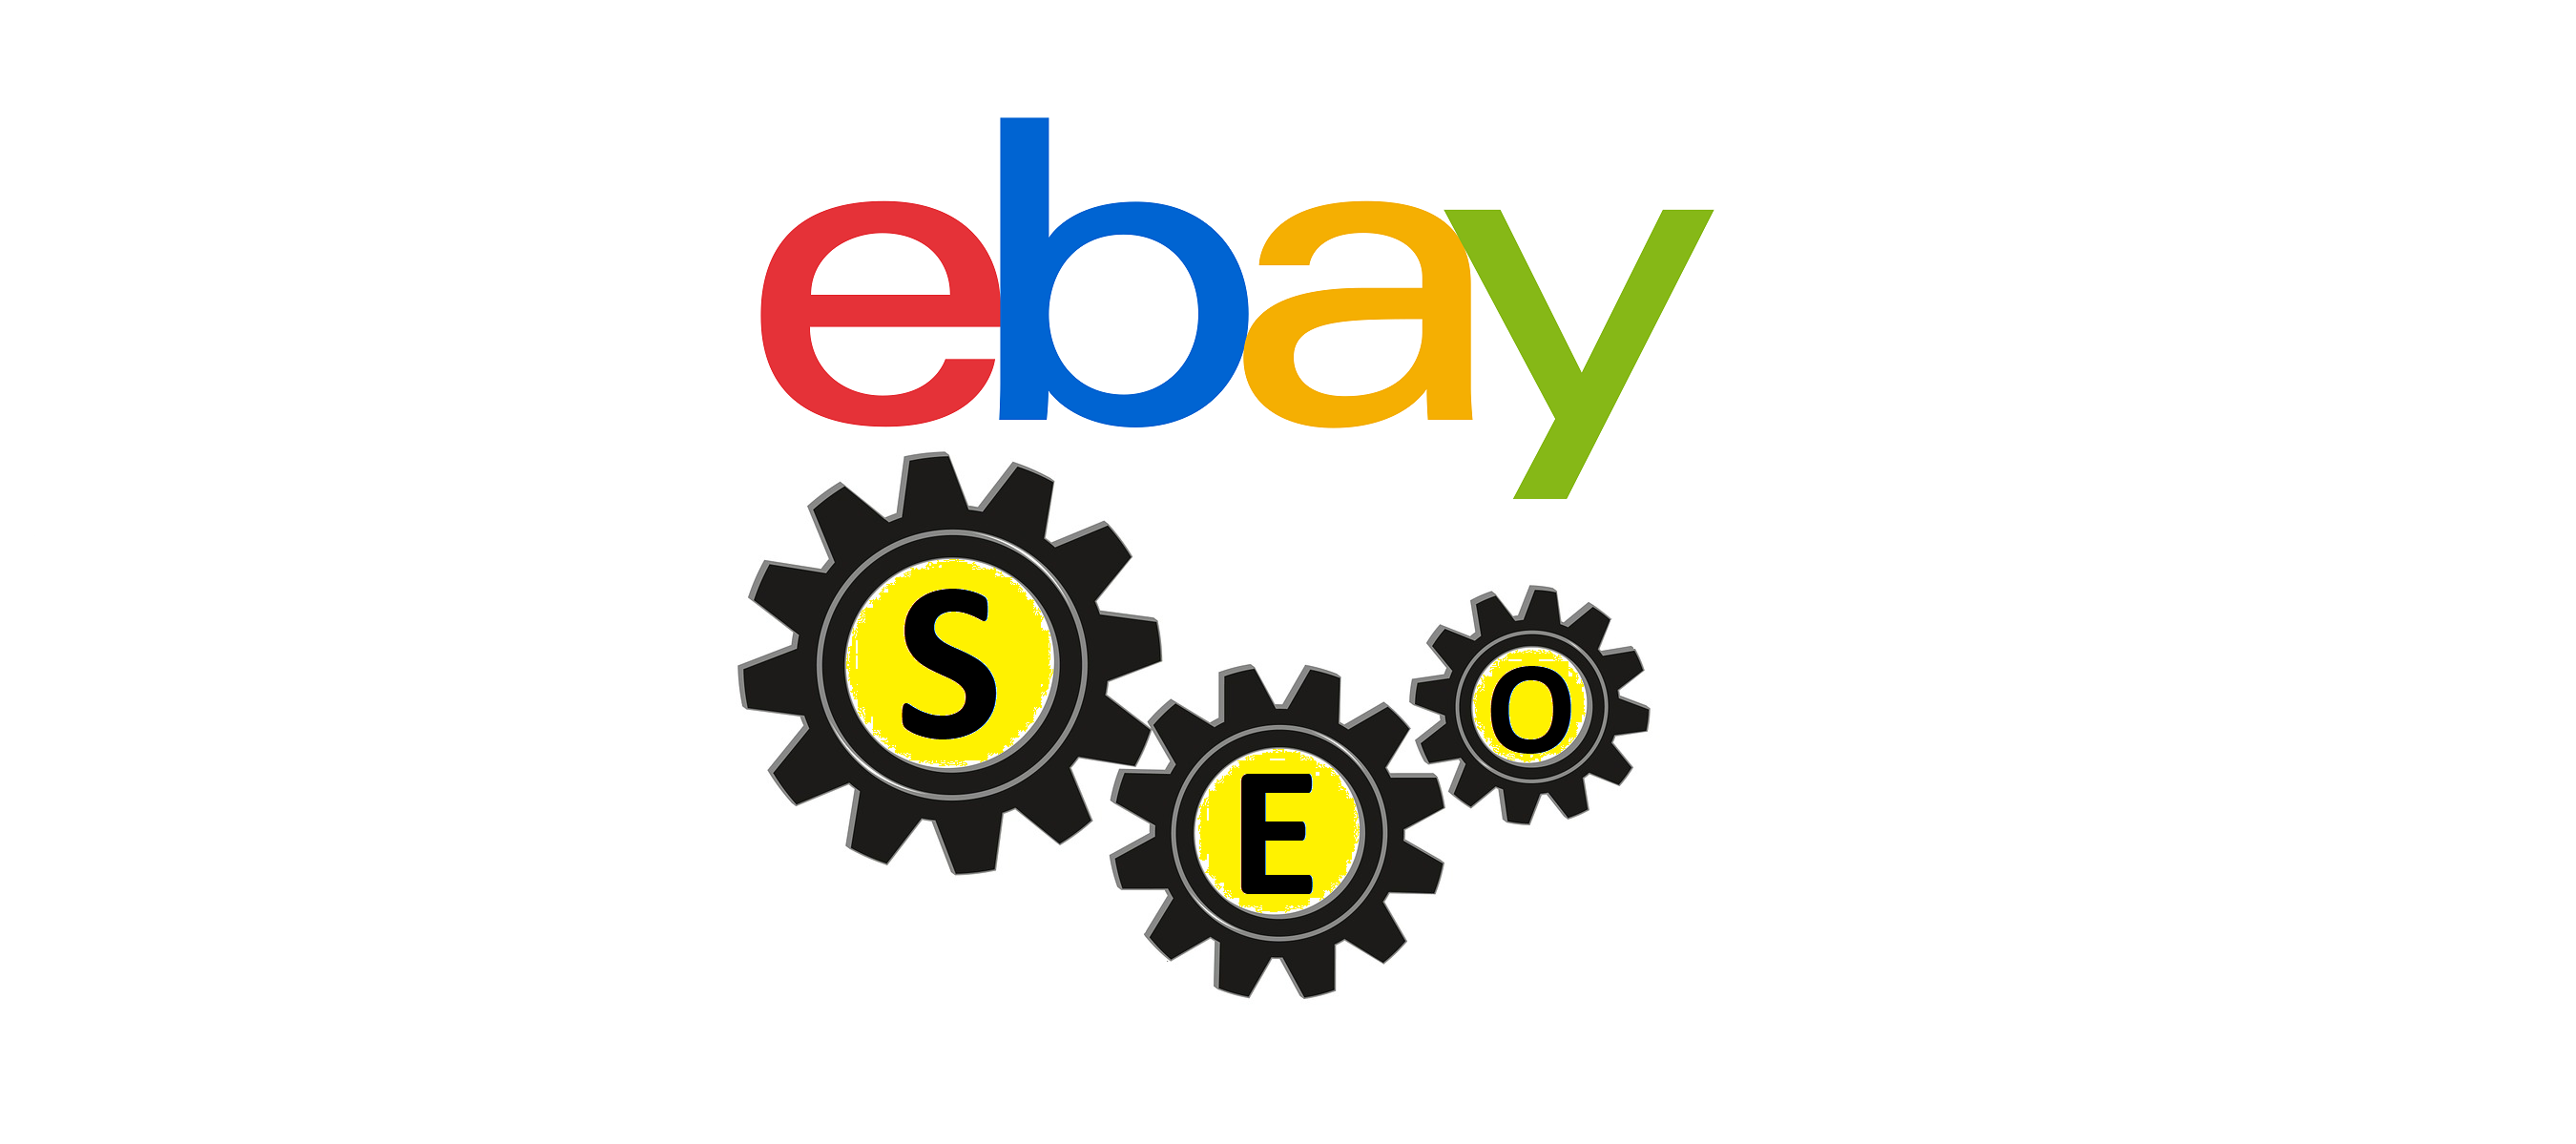 eBay SEO – 10 dicas para optimizar a sua classificação